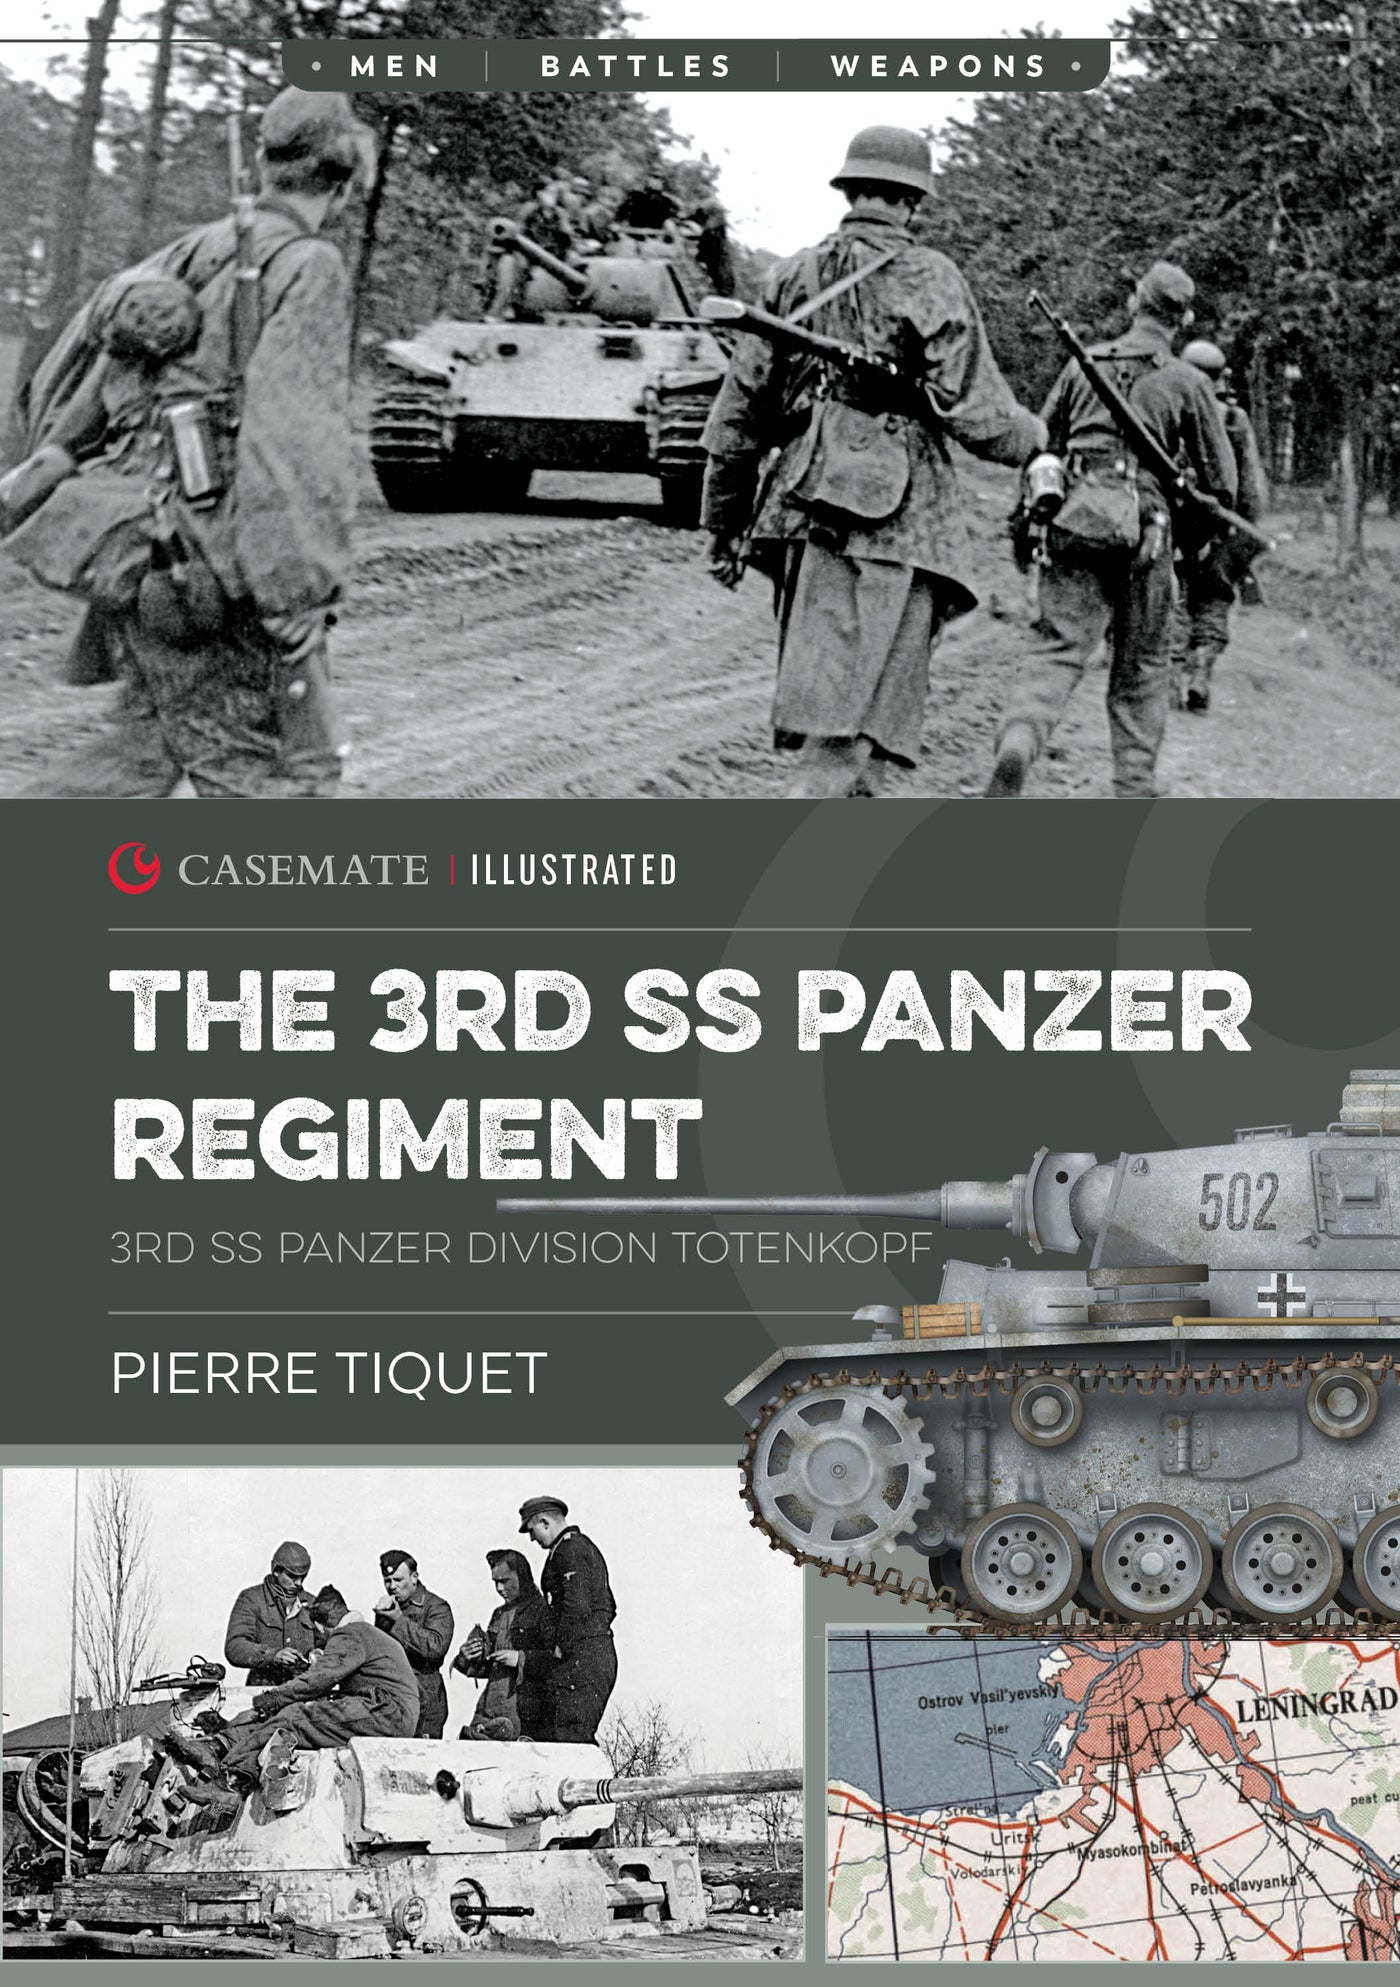 The 3rd SS Panzer Regiment